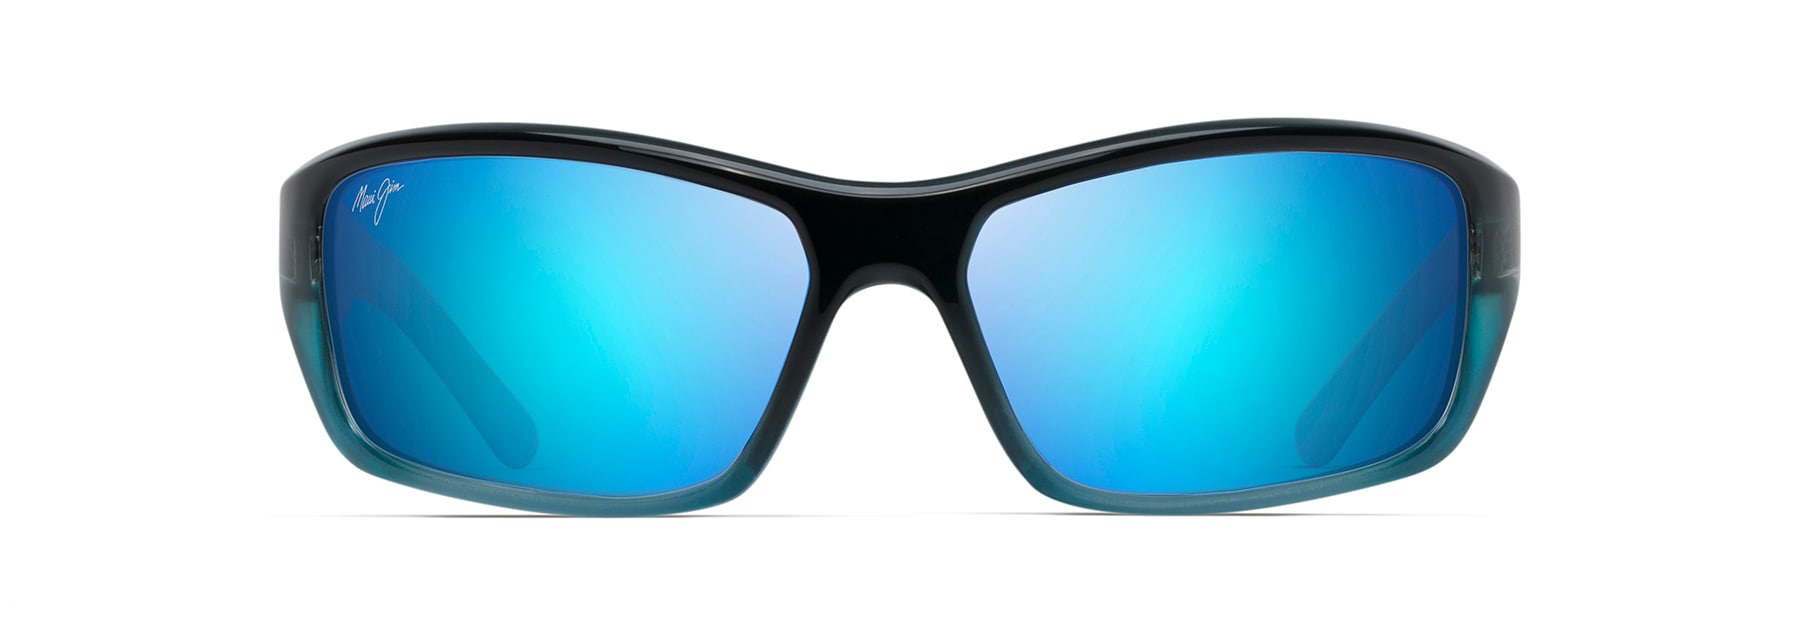 Blue Frame Polarised Sunglasses Blue Lenses Outdoor  Eyewear Sports Shades UK 